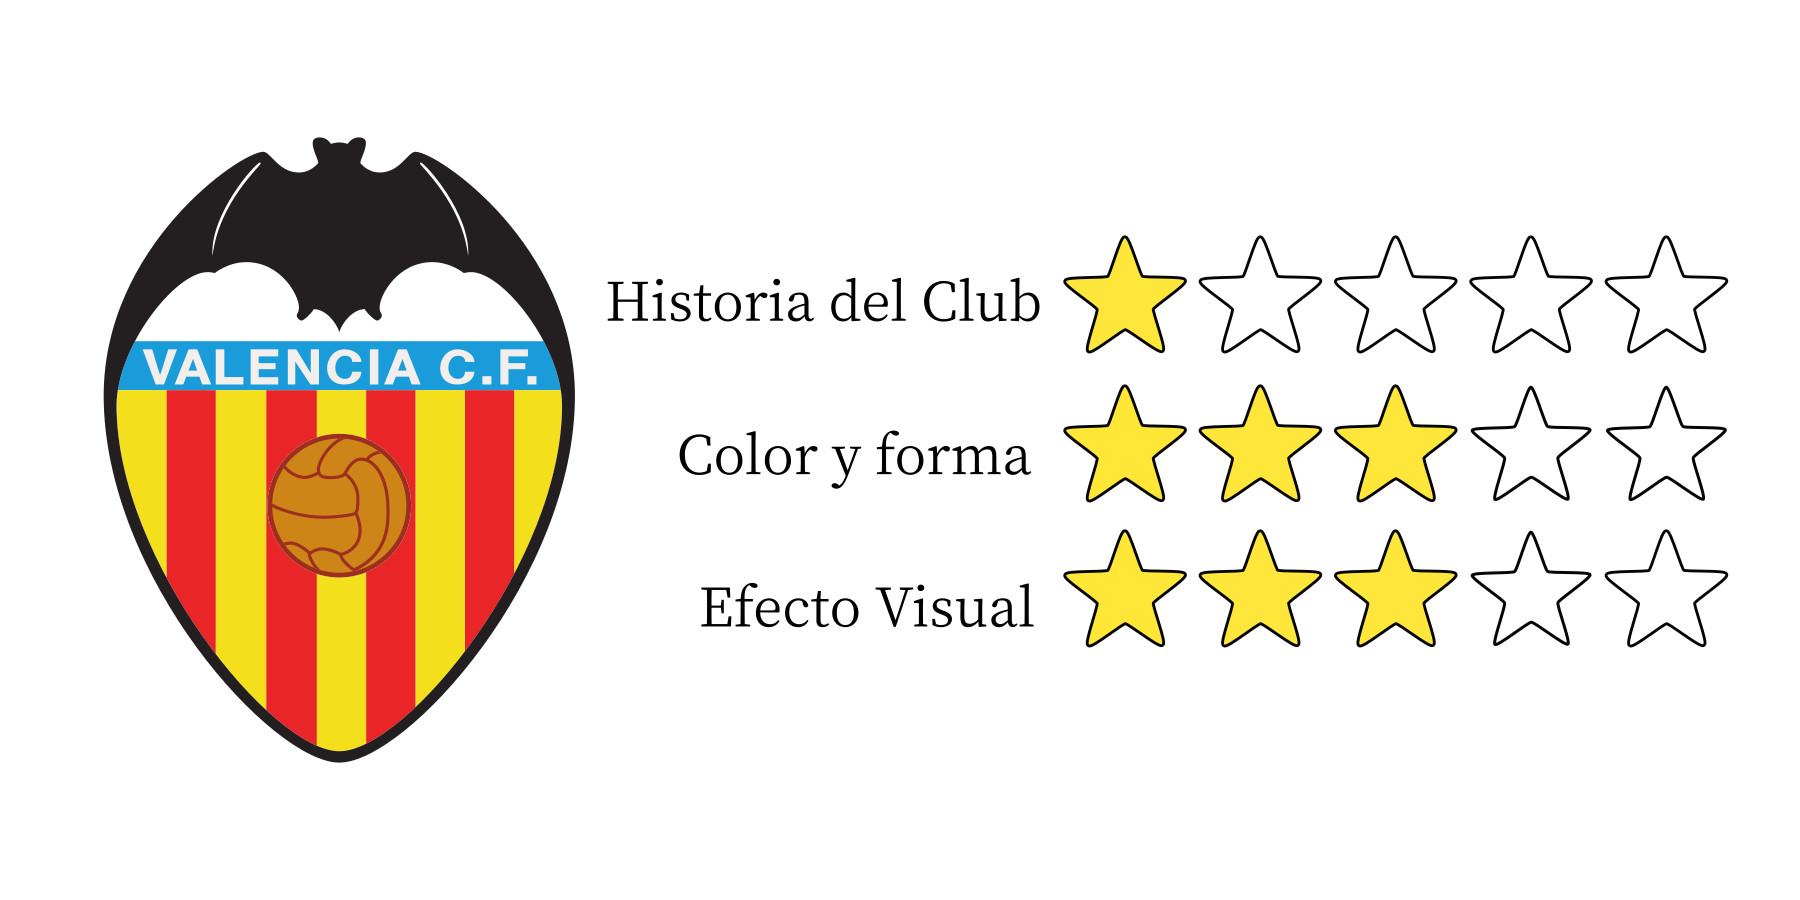 Análisis del escudo del Valencia CF (parte 8 de 10) GilGeiger Creative